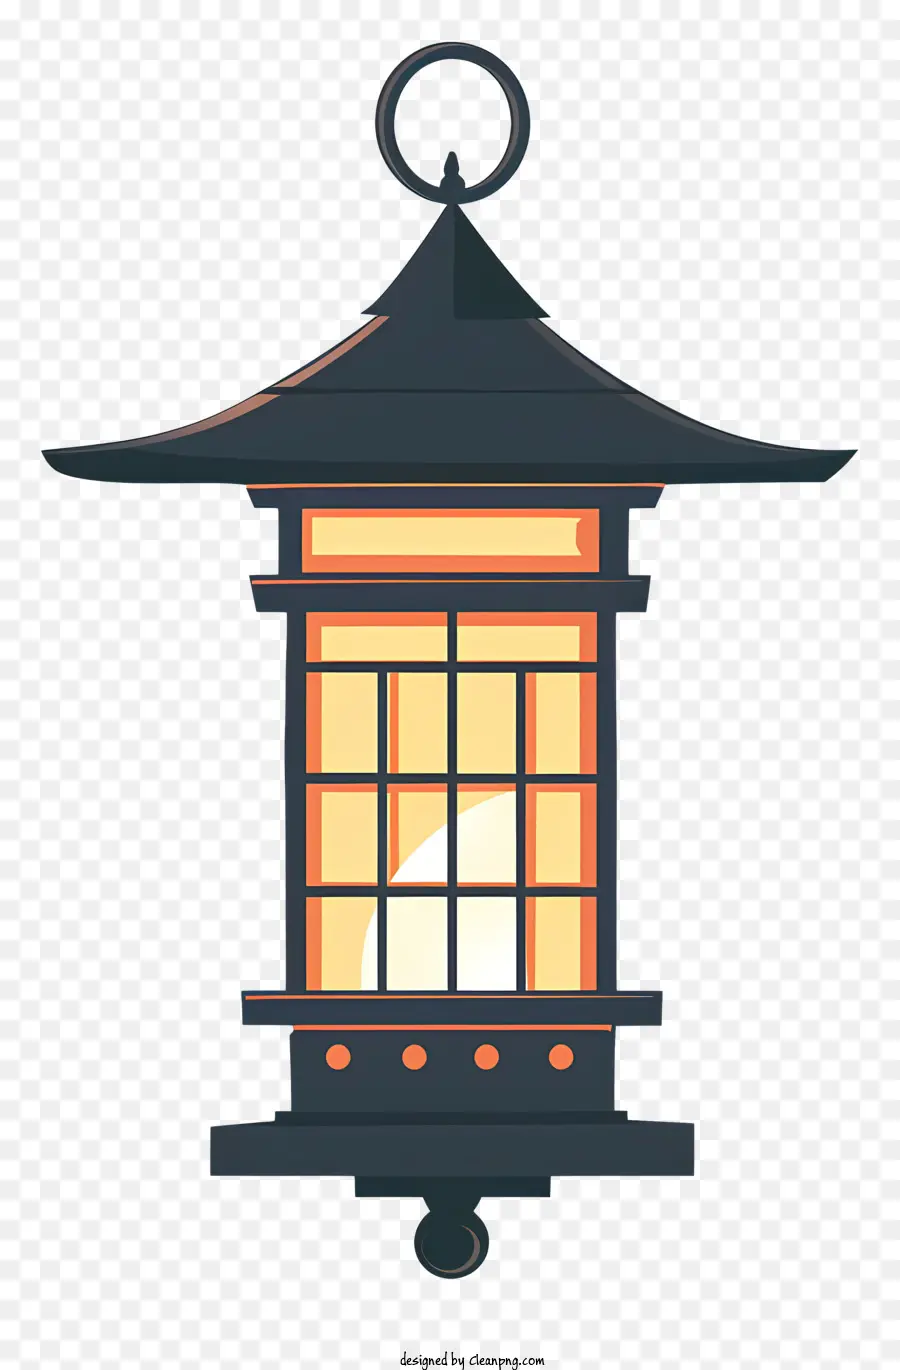 lanterna metallica tradizionale tradizionale giapponese sculture ornate ornate tetto curvo bagliore giallo caldo - Lanterna tradizionale giapponese con sculture decorate, illuminate all'interno